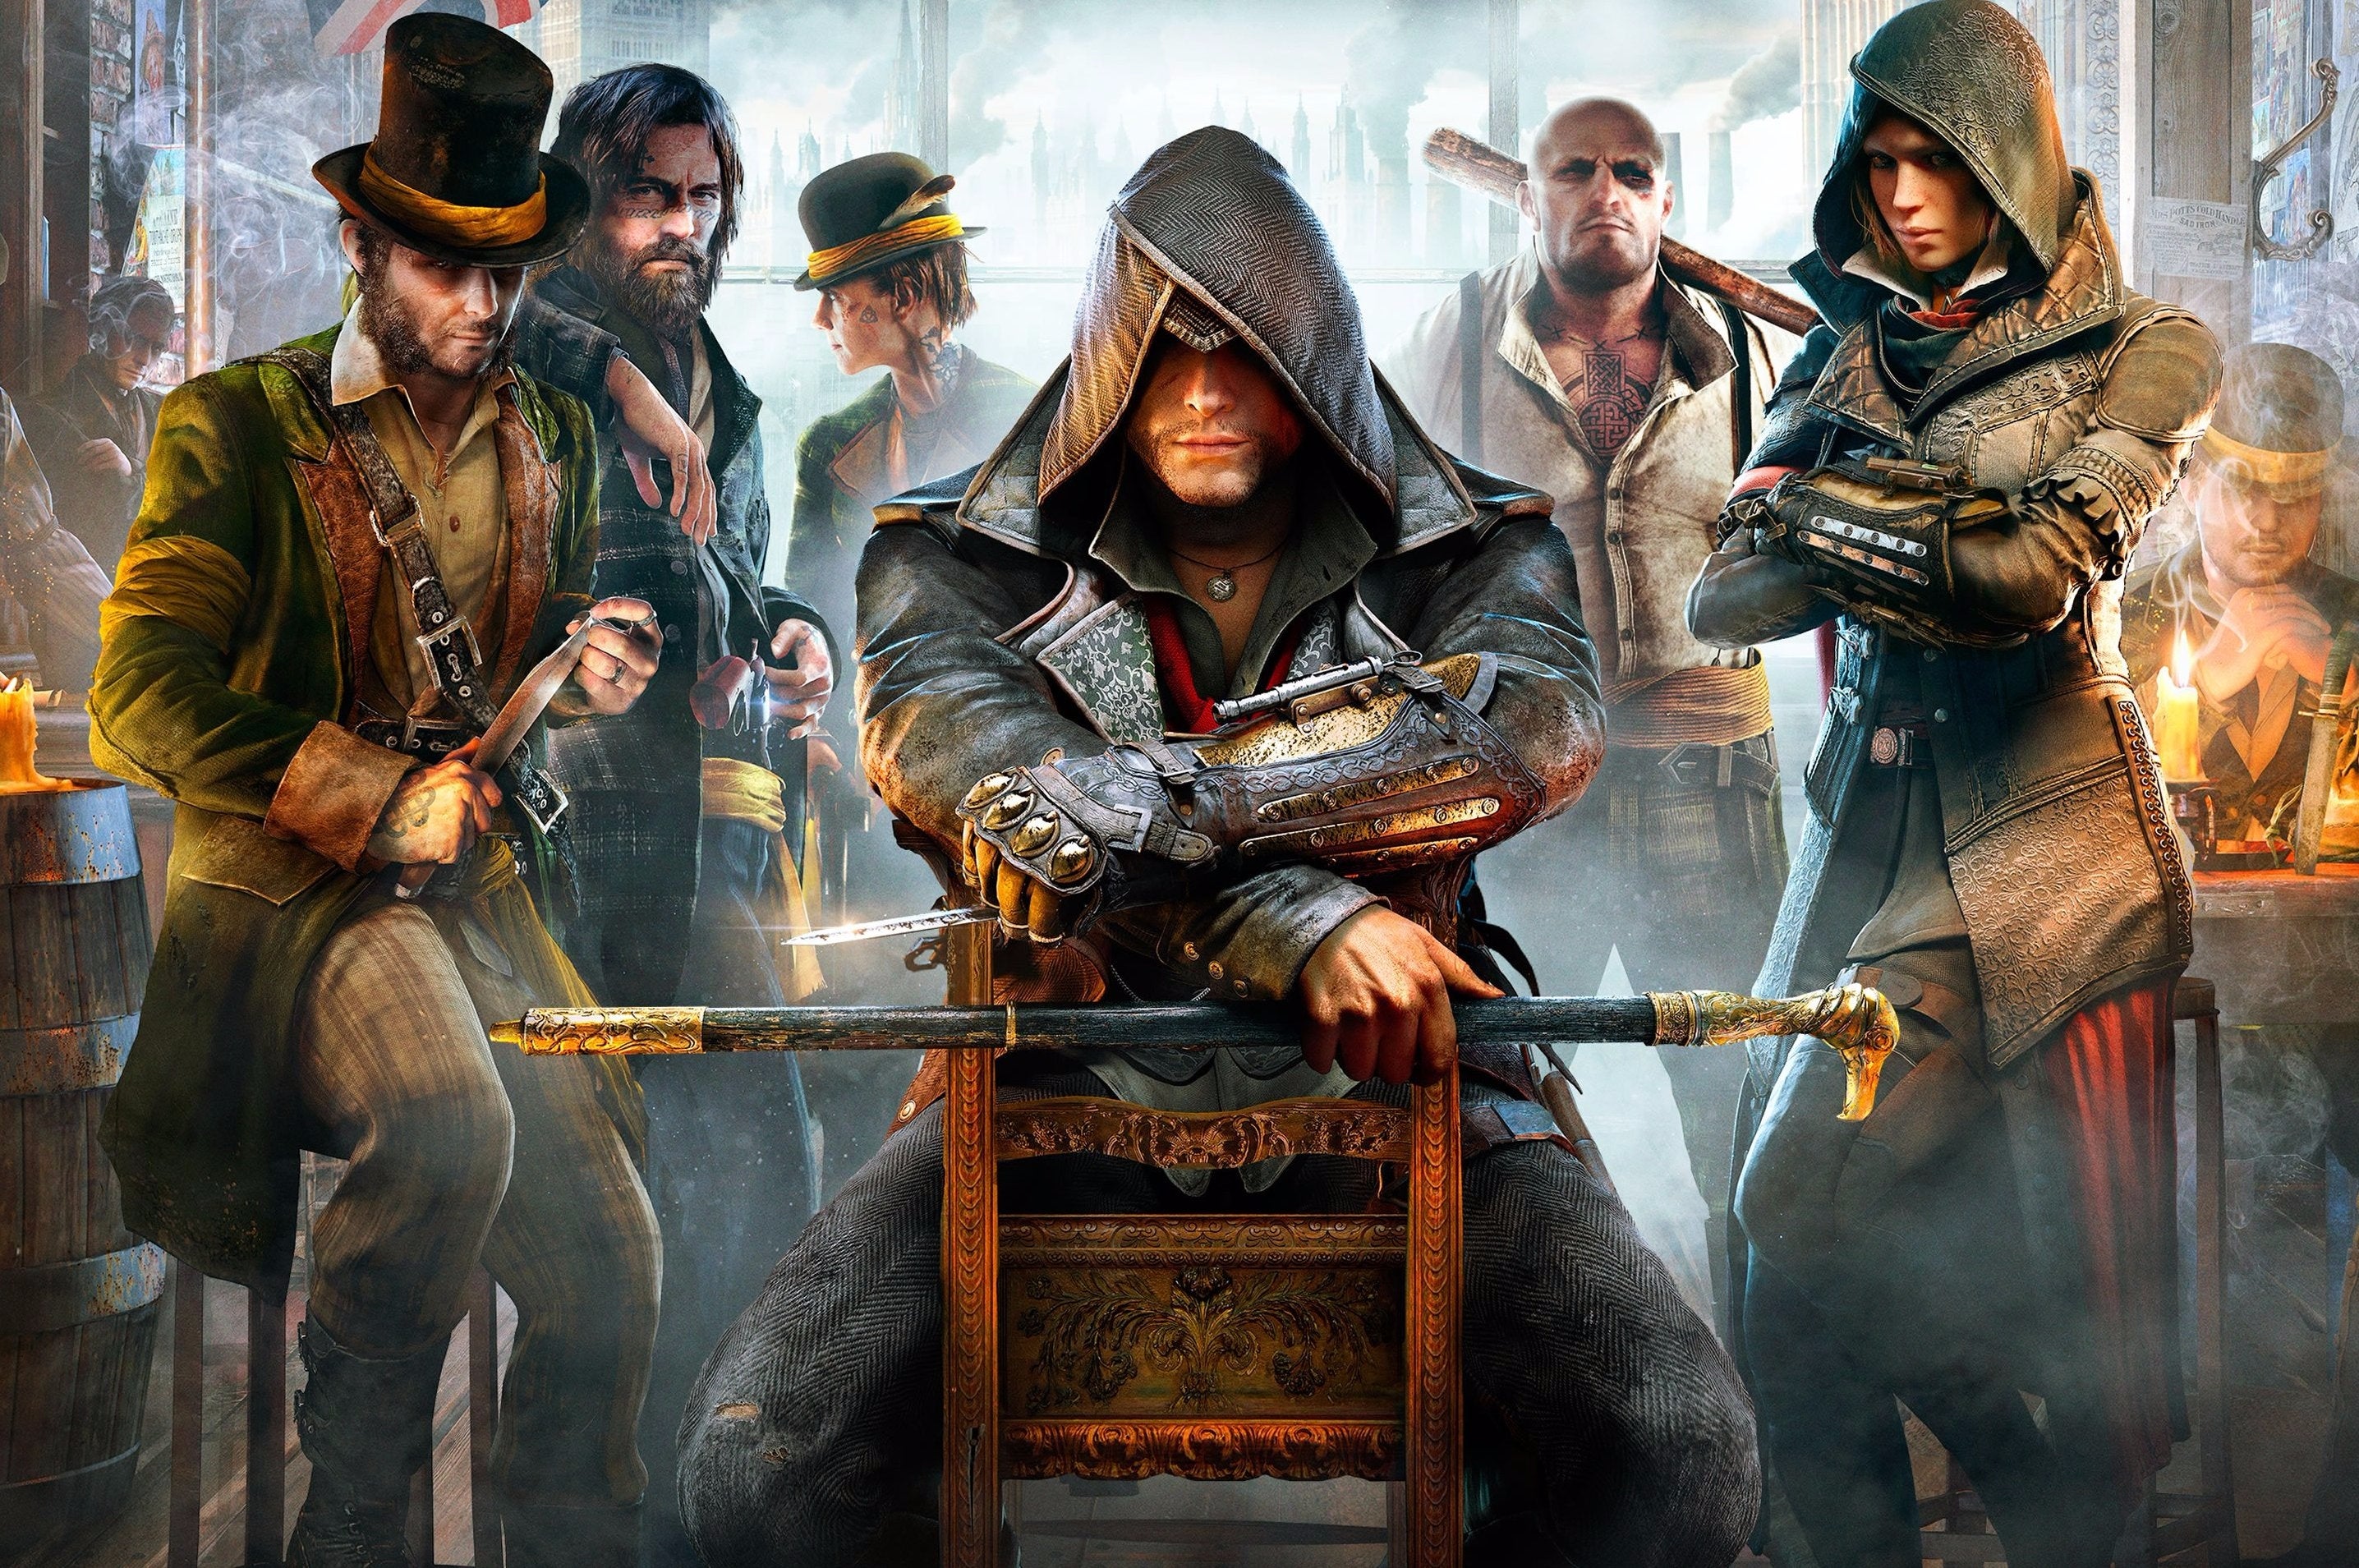 Imagen para Assassin's Creed: Syndicate número uno en ventas en el Reino Unido